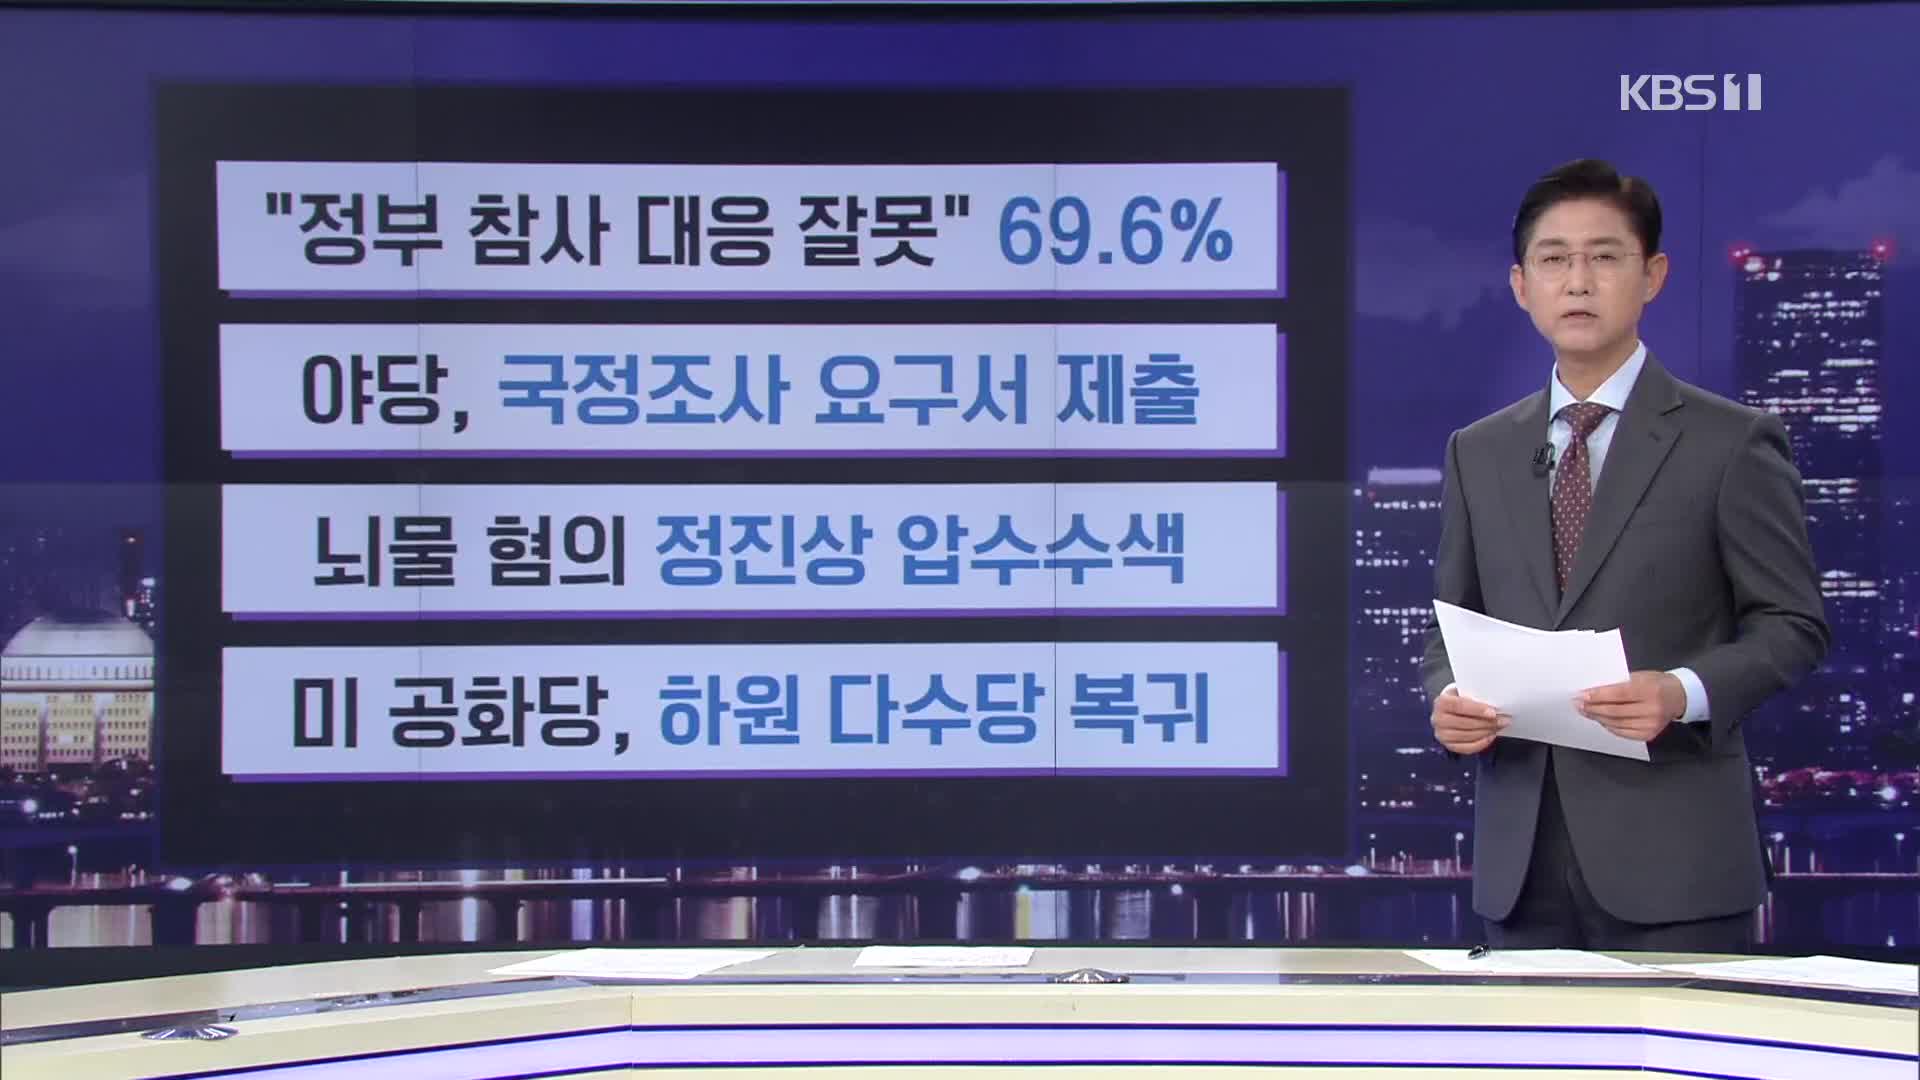 [간추린 뉴스] “정부 참사 대응 잘못” 69.6% 외